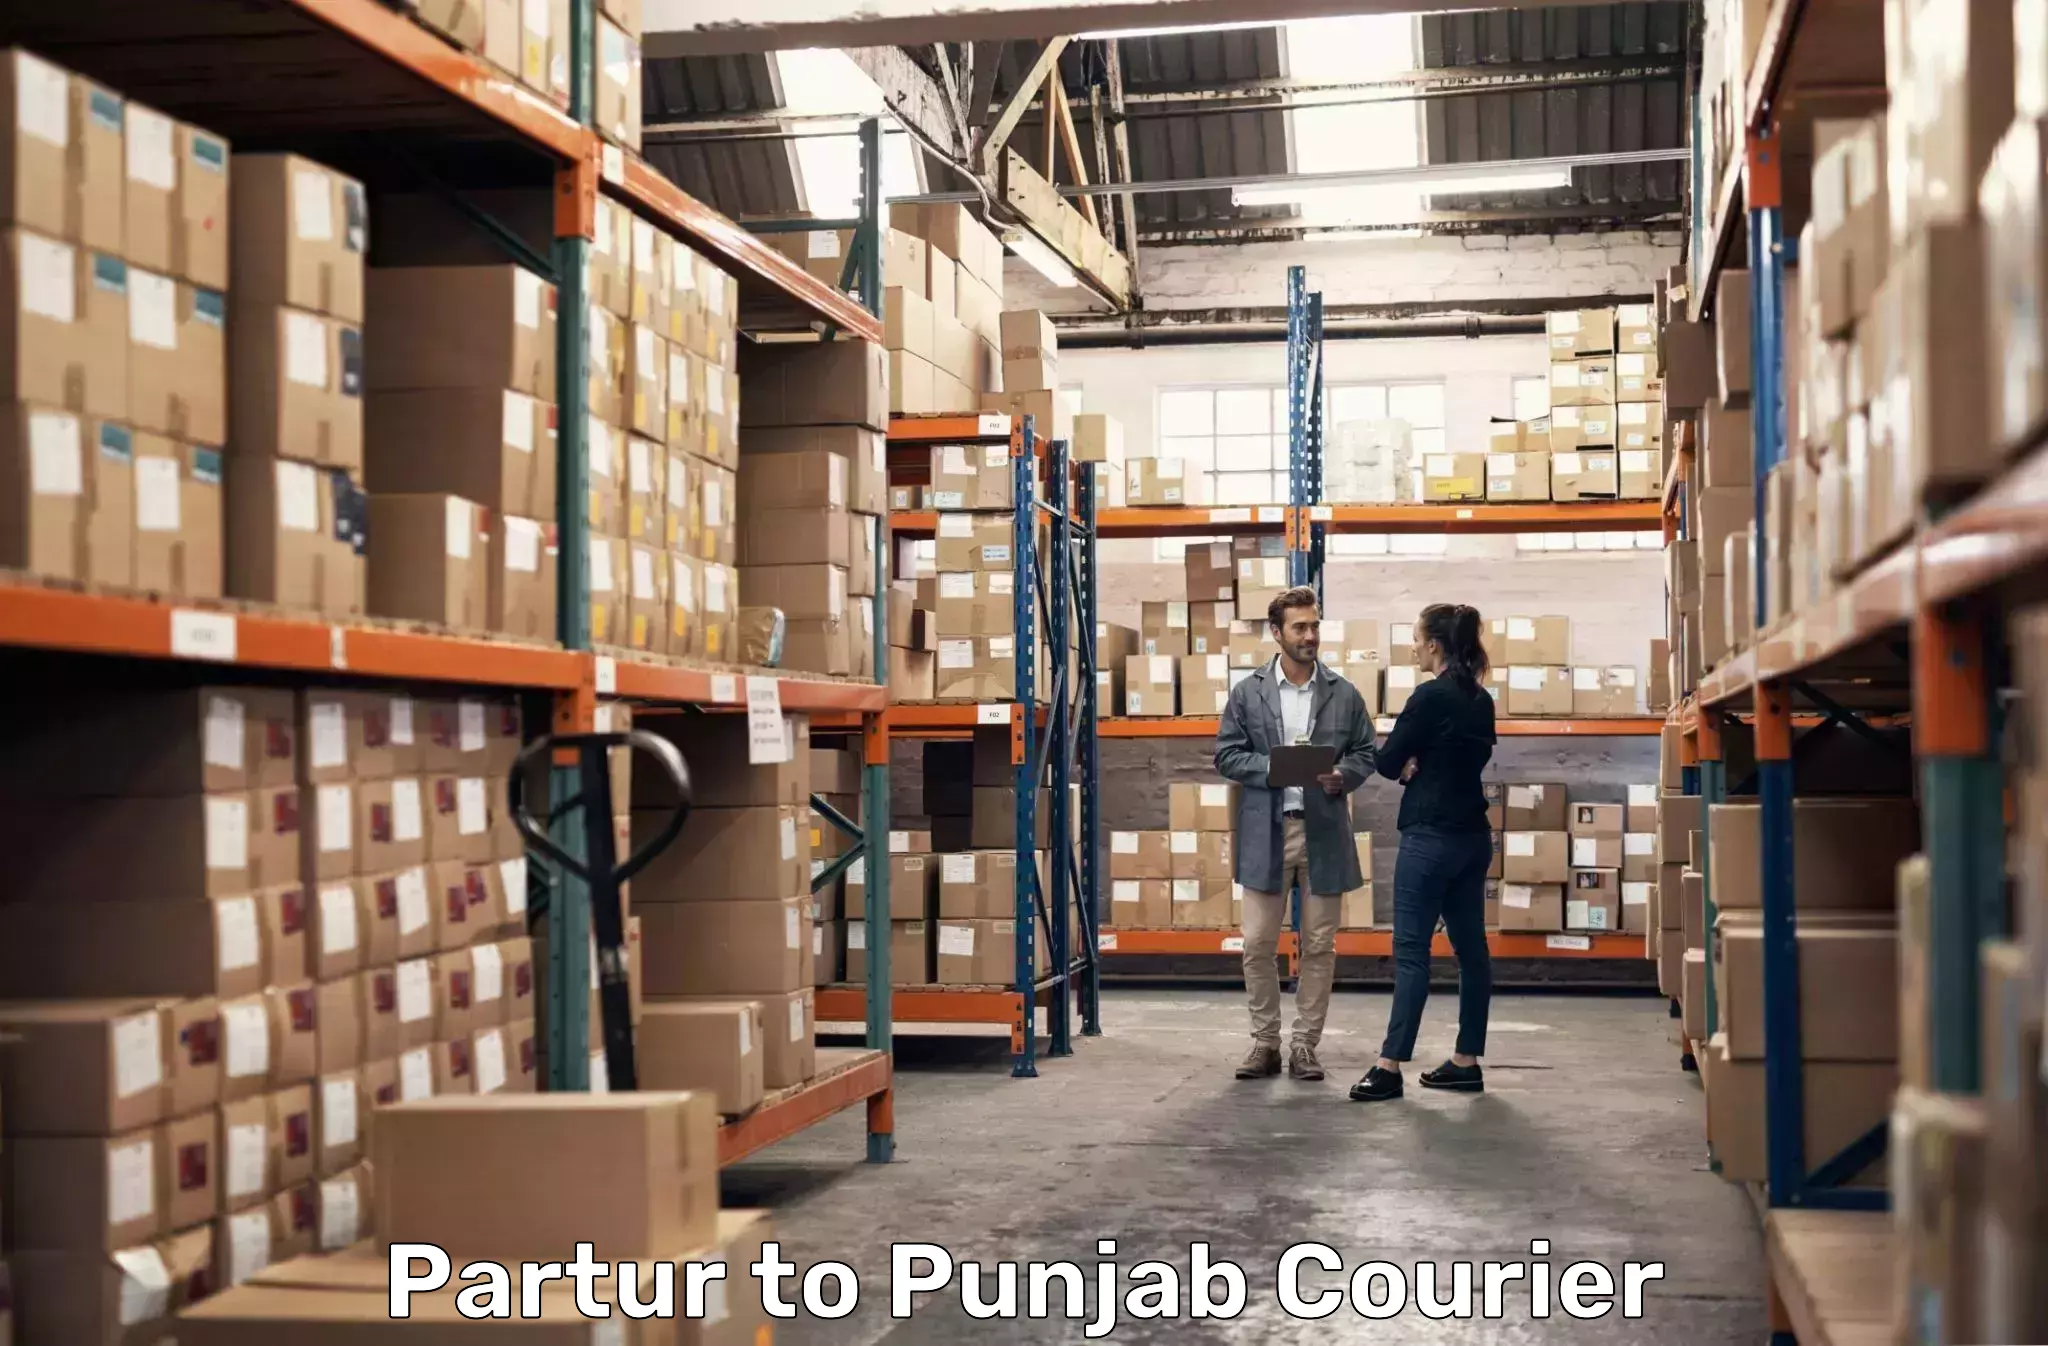 Courier service comparison Partur to Sultanpur Lodhi